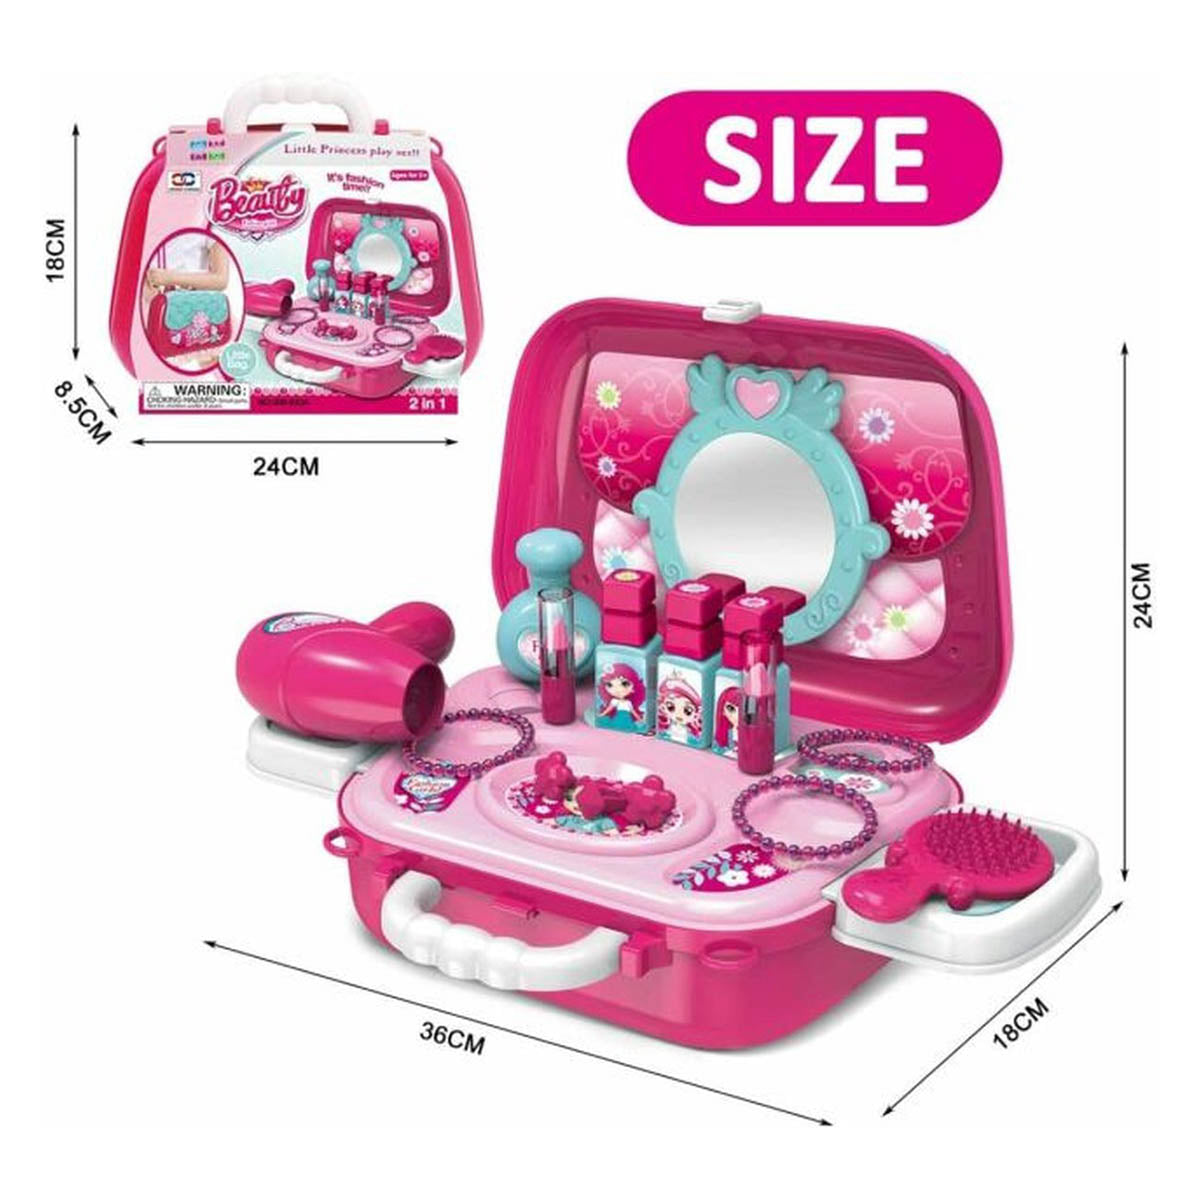 Ariko Trousse de maquillage pour enfants - Portable - Rose - Stylist Toys